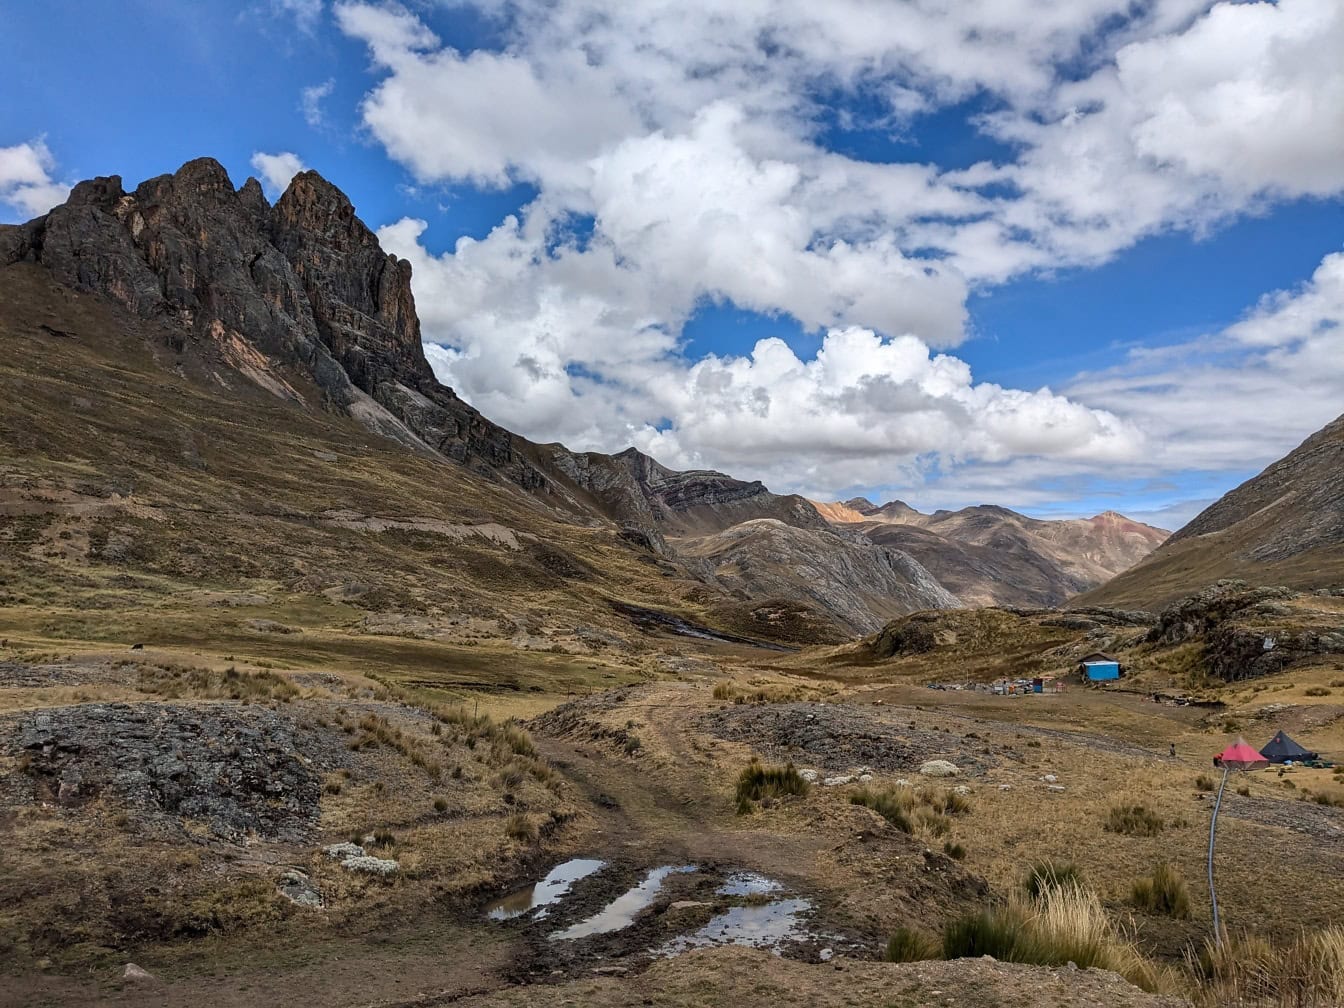 Горный хребет с кемпингом в долине в горном массиве Кордильера Уайуаш в Андах Перу